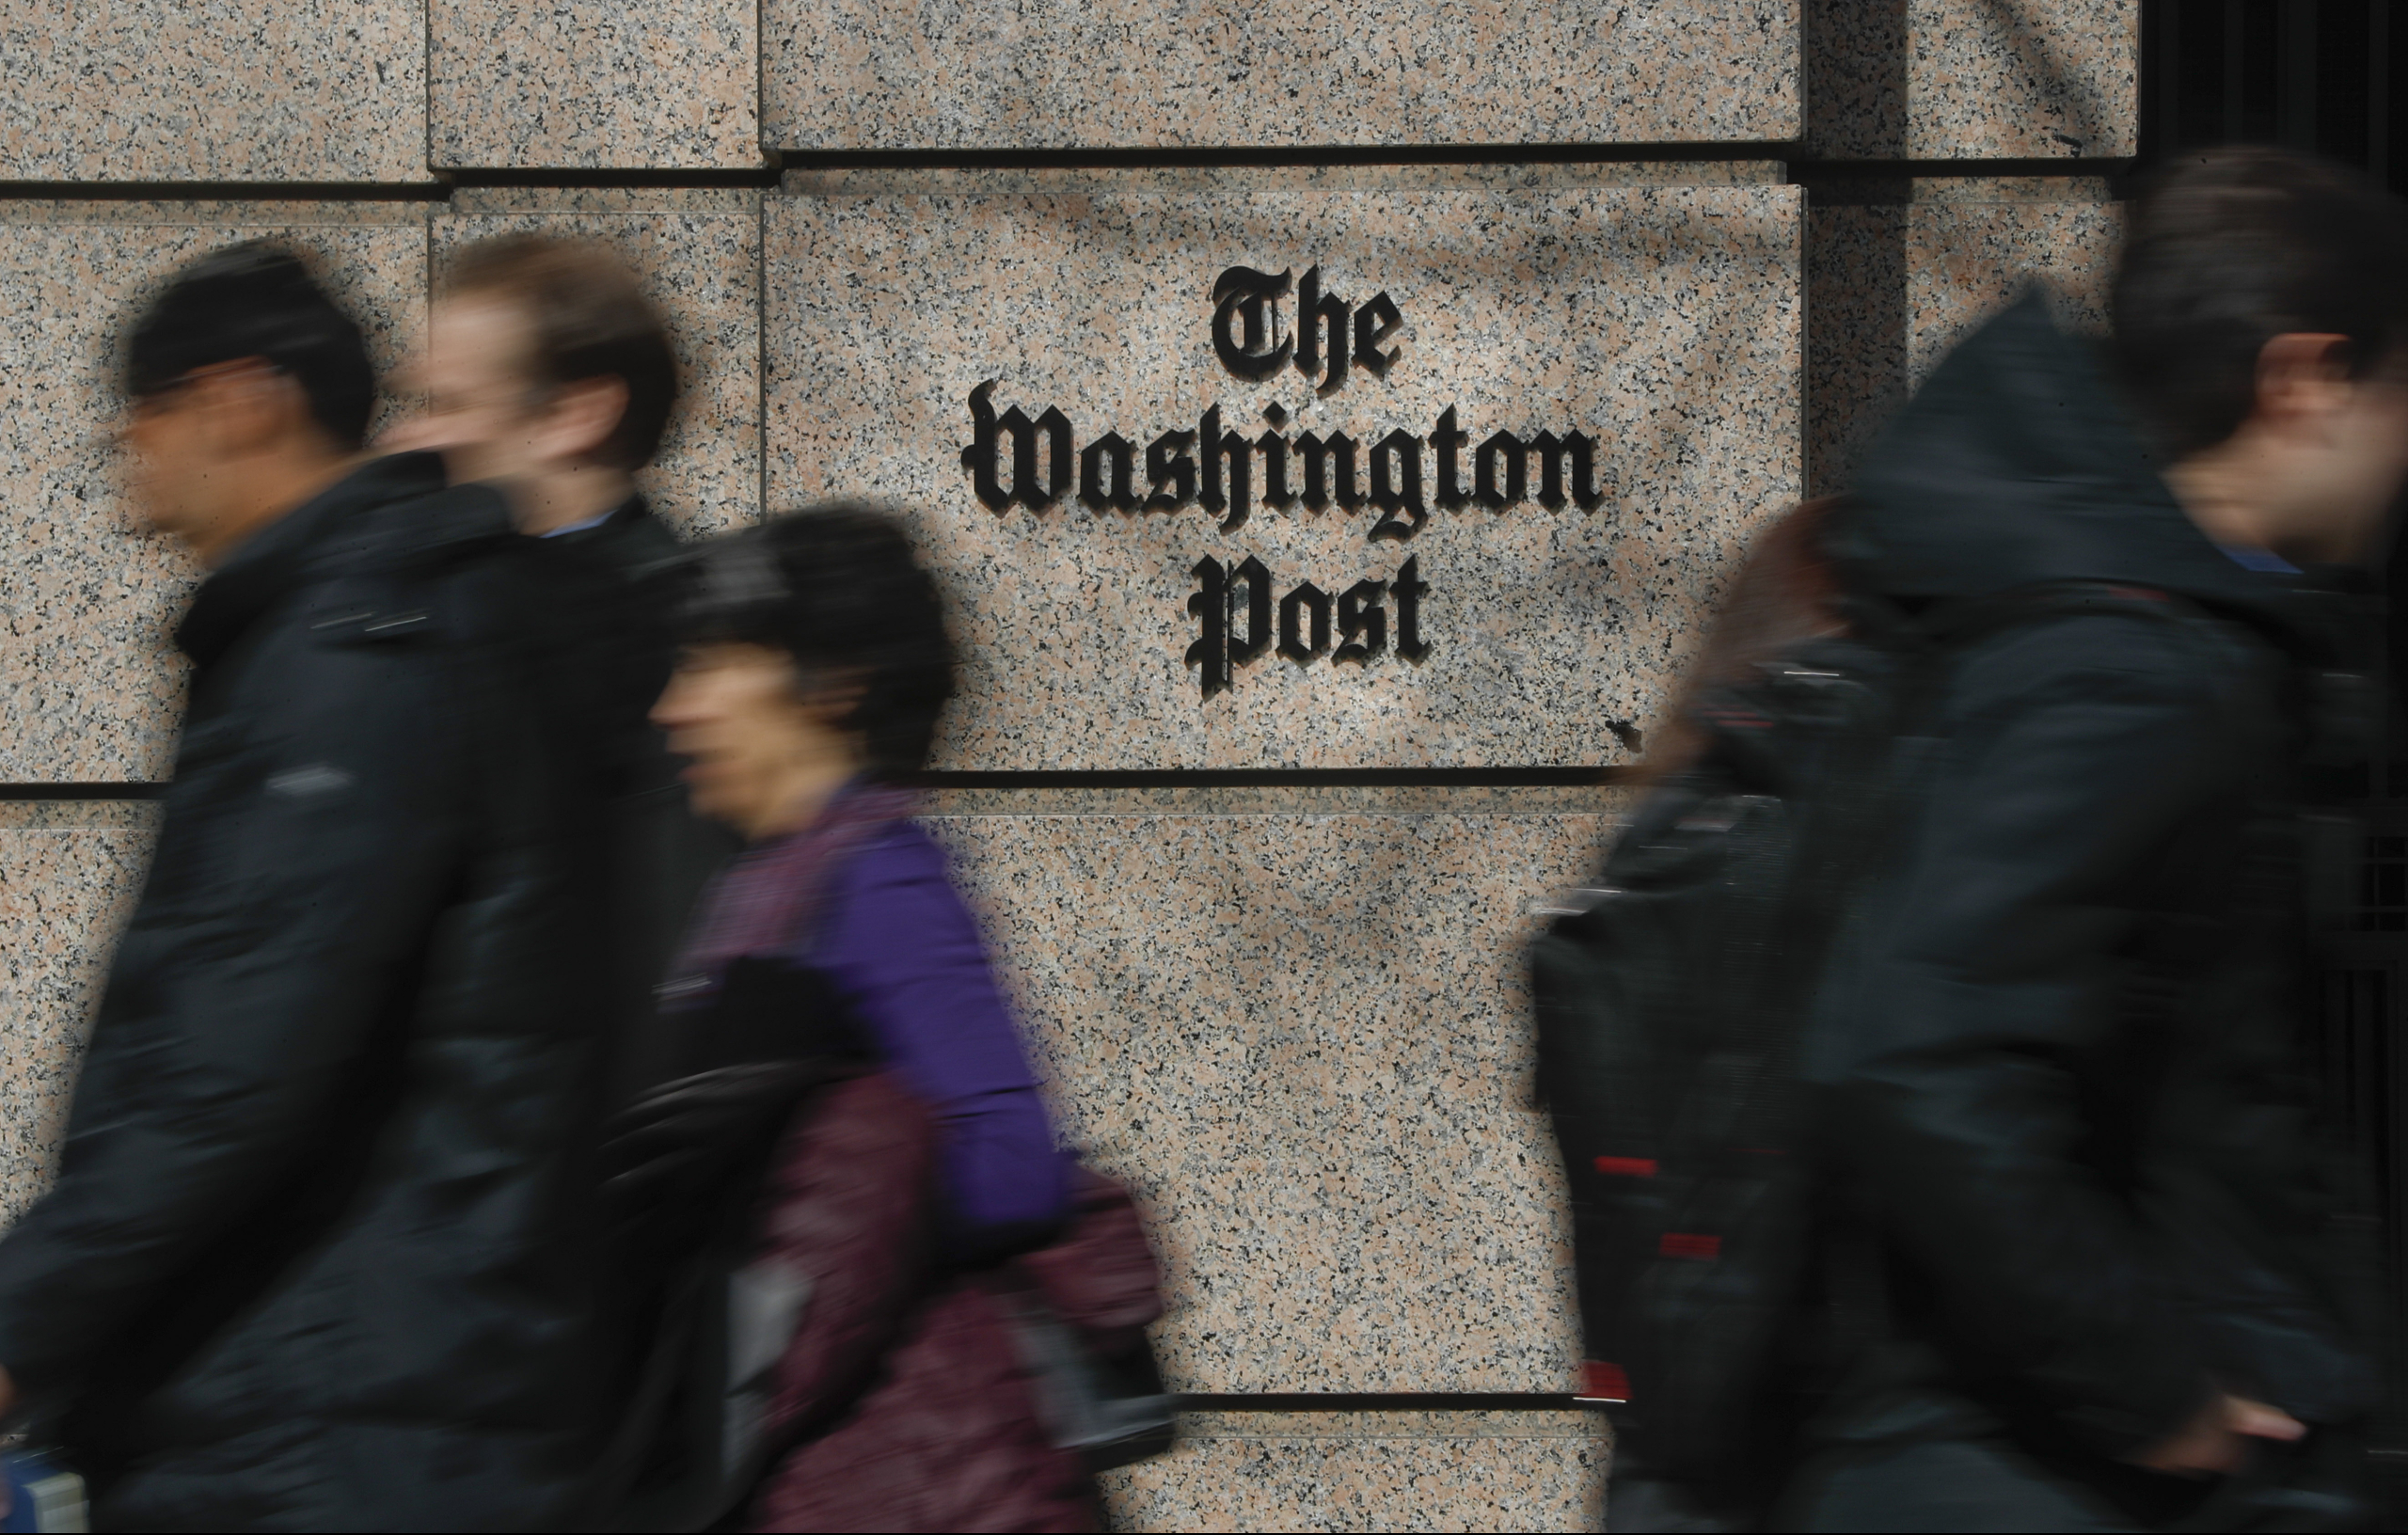 “Le Washington Post fait du climat une priorité”